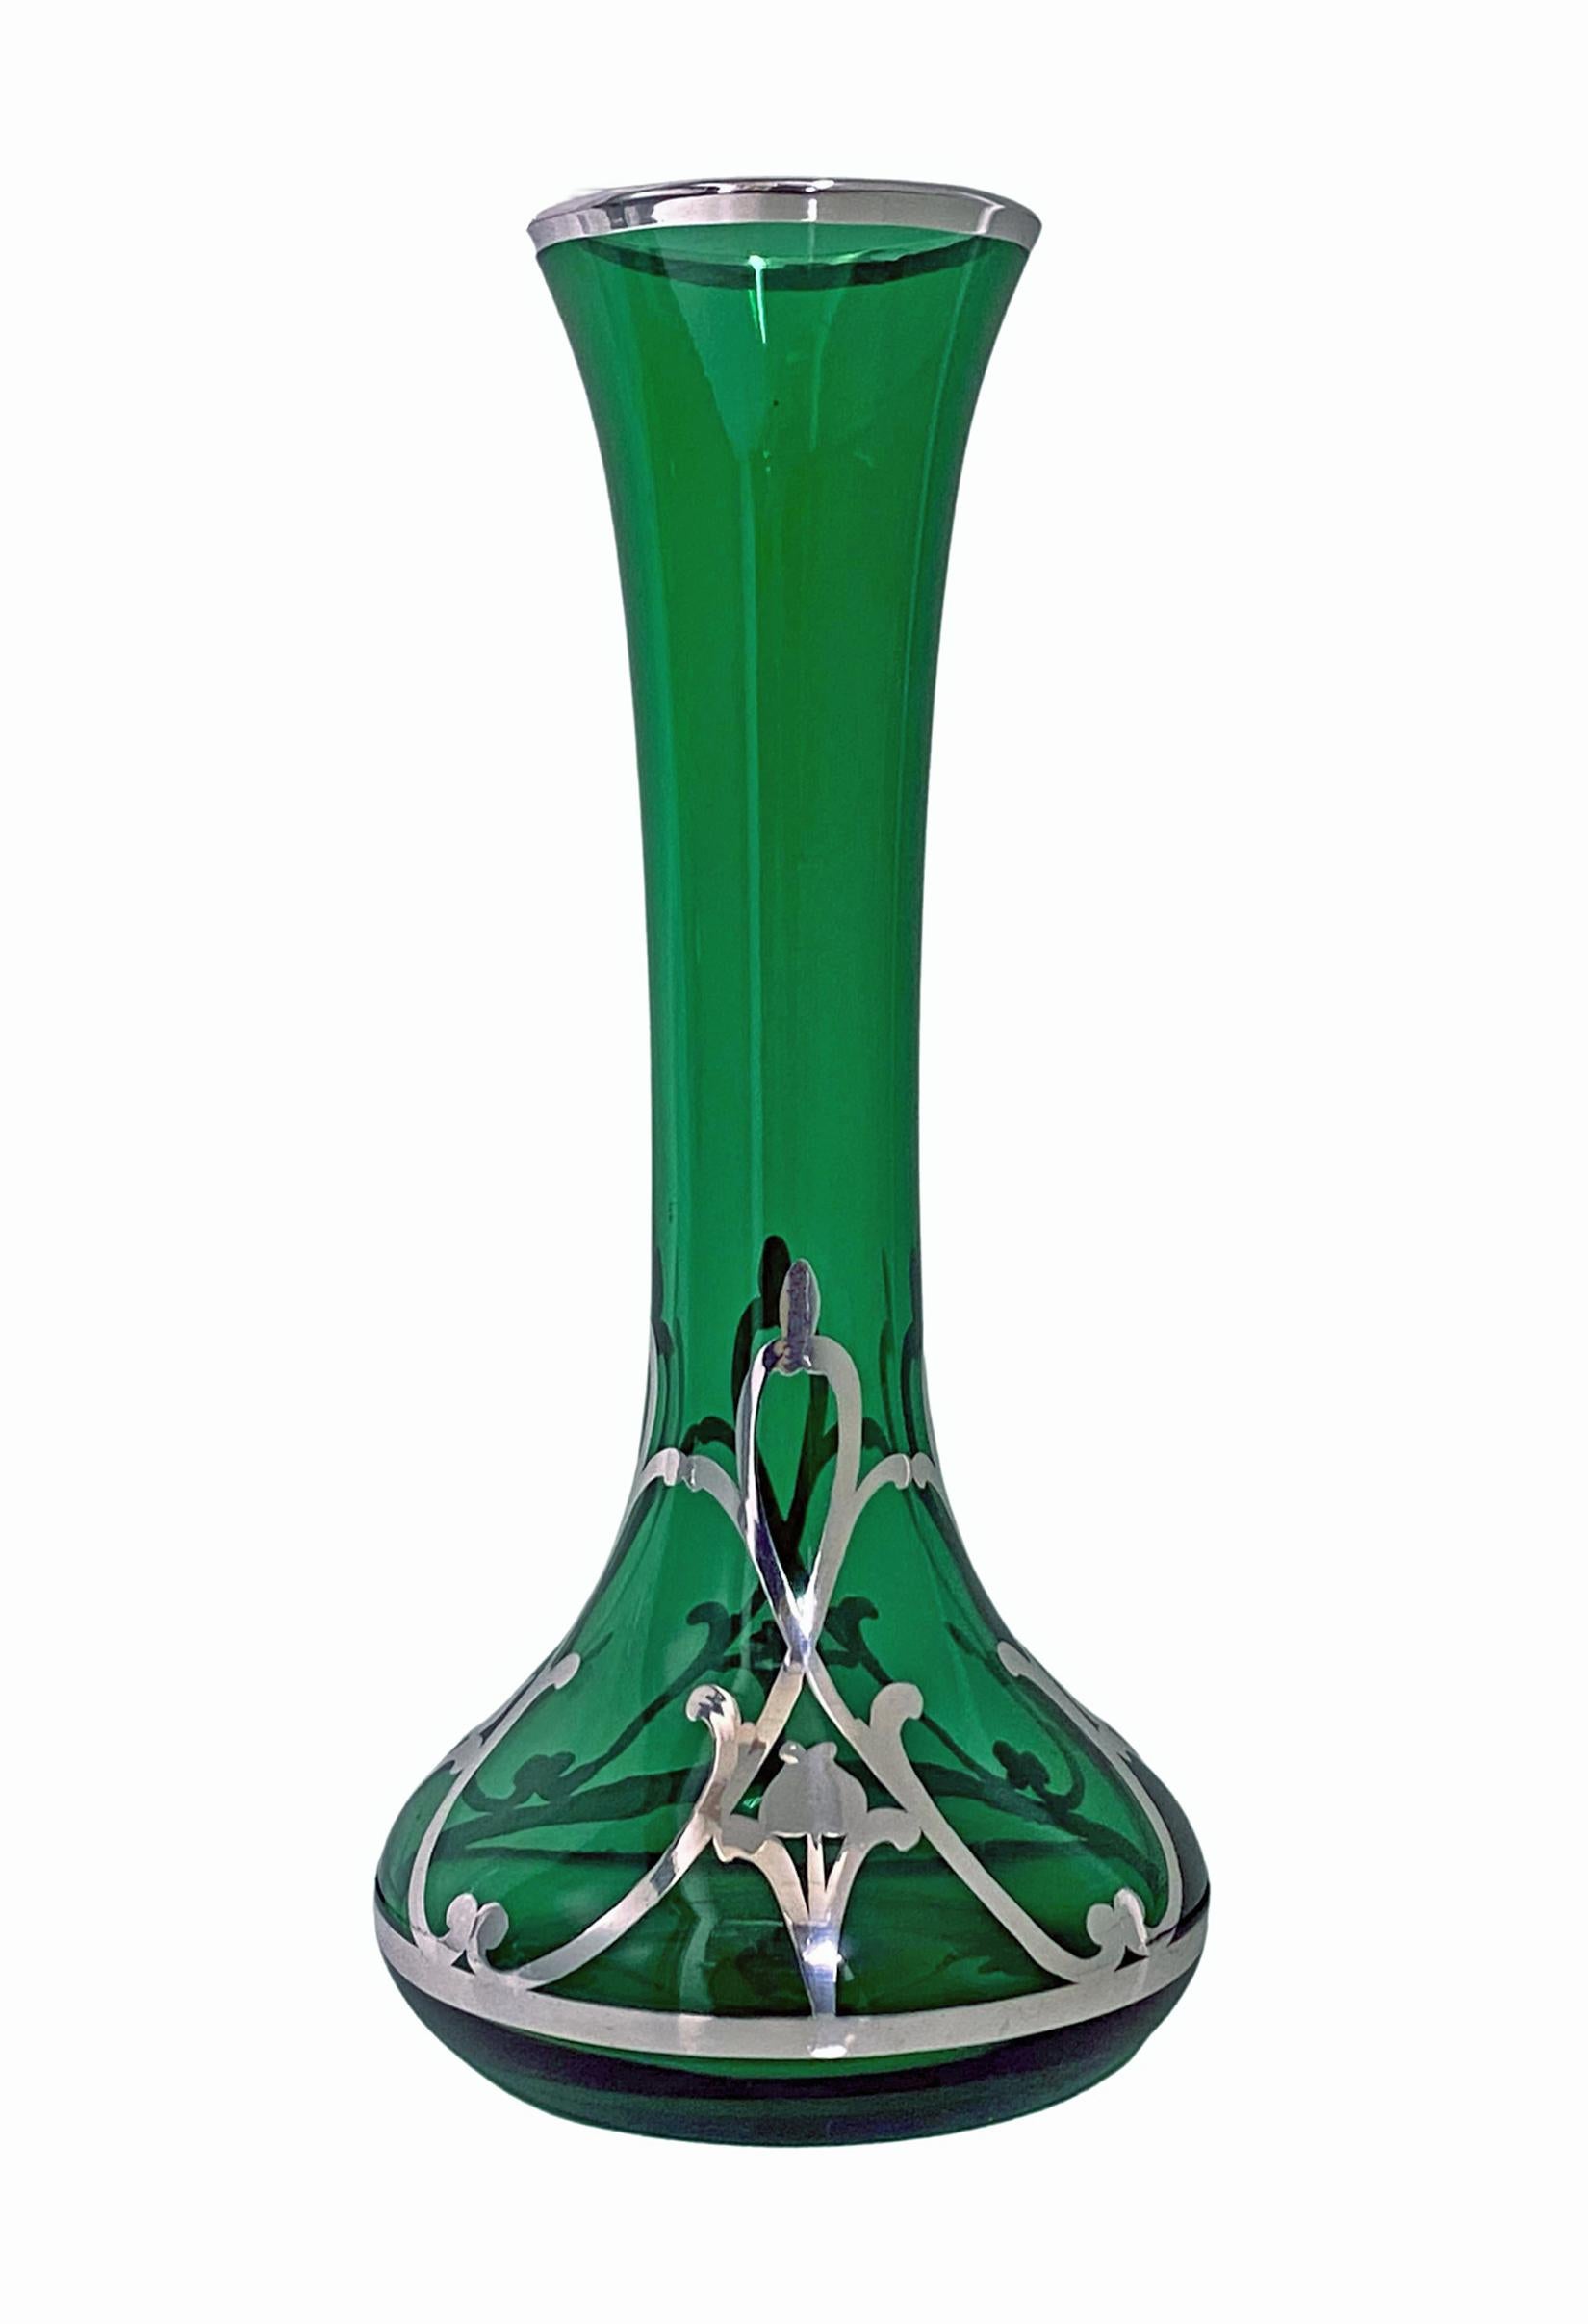 Art Nouveau Sterling overlay grün Vase, Amerikanisch C.1910. Verjüngte, bauchige Form, der untere Teil mit Jugendstil-Sterling-Überfang, das grüne Glas verjüngt sich leicht zu einem umgedrehten, in Sterling gefassten Rand. Signiert in Sterling.